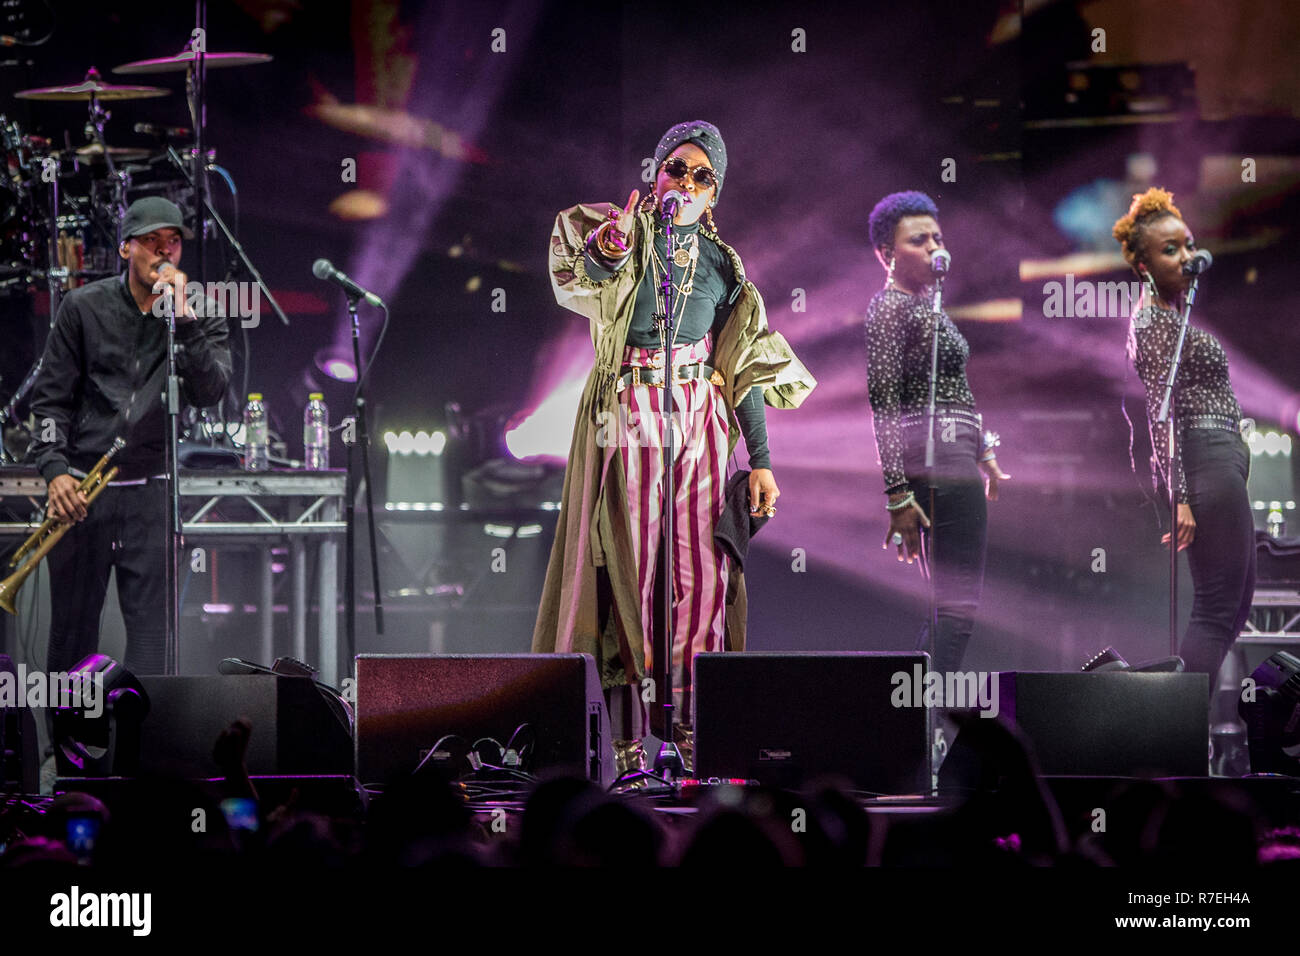 Danimarca, Copenaghen. 8 Dic 2018. Il cantante e cantautore Lauryn Hill  esegue un concerto dal vivo al Black Box Forum di Copenhagen. (Photo  credit: Gonzales foto - Thomas RASMUSSEN). Credito: Gonzales foto/Alamy